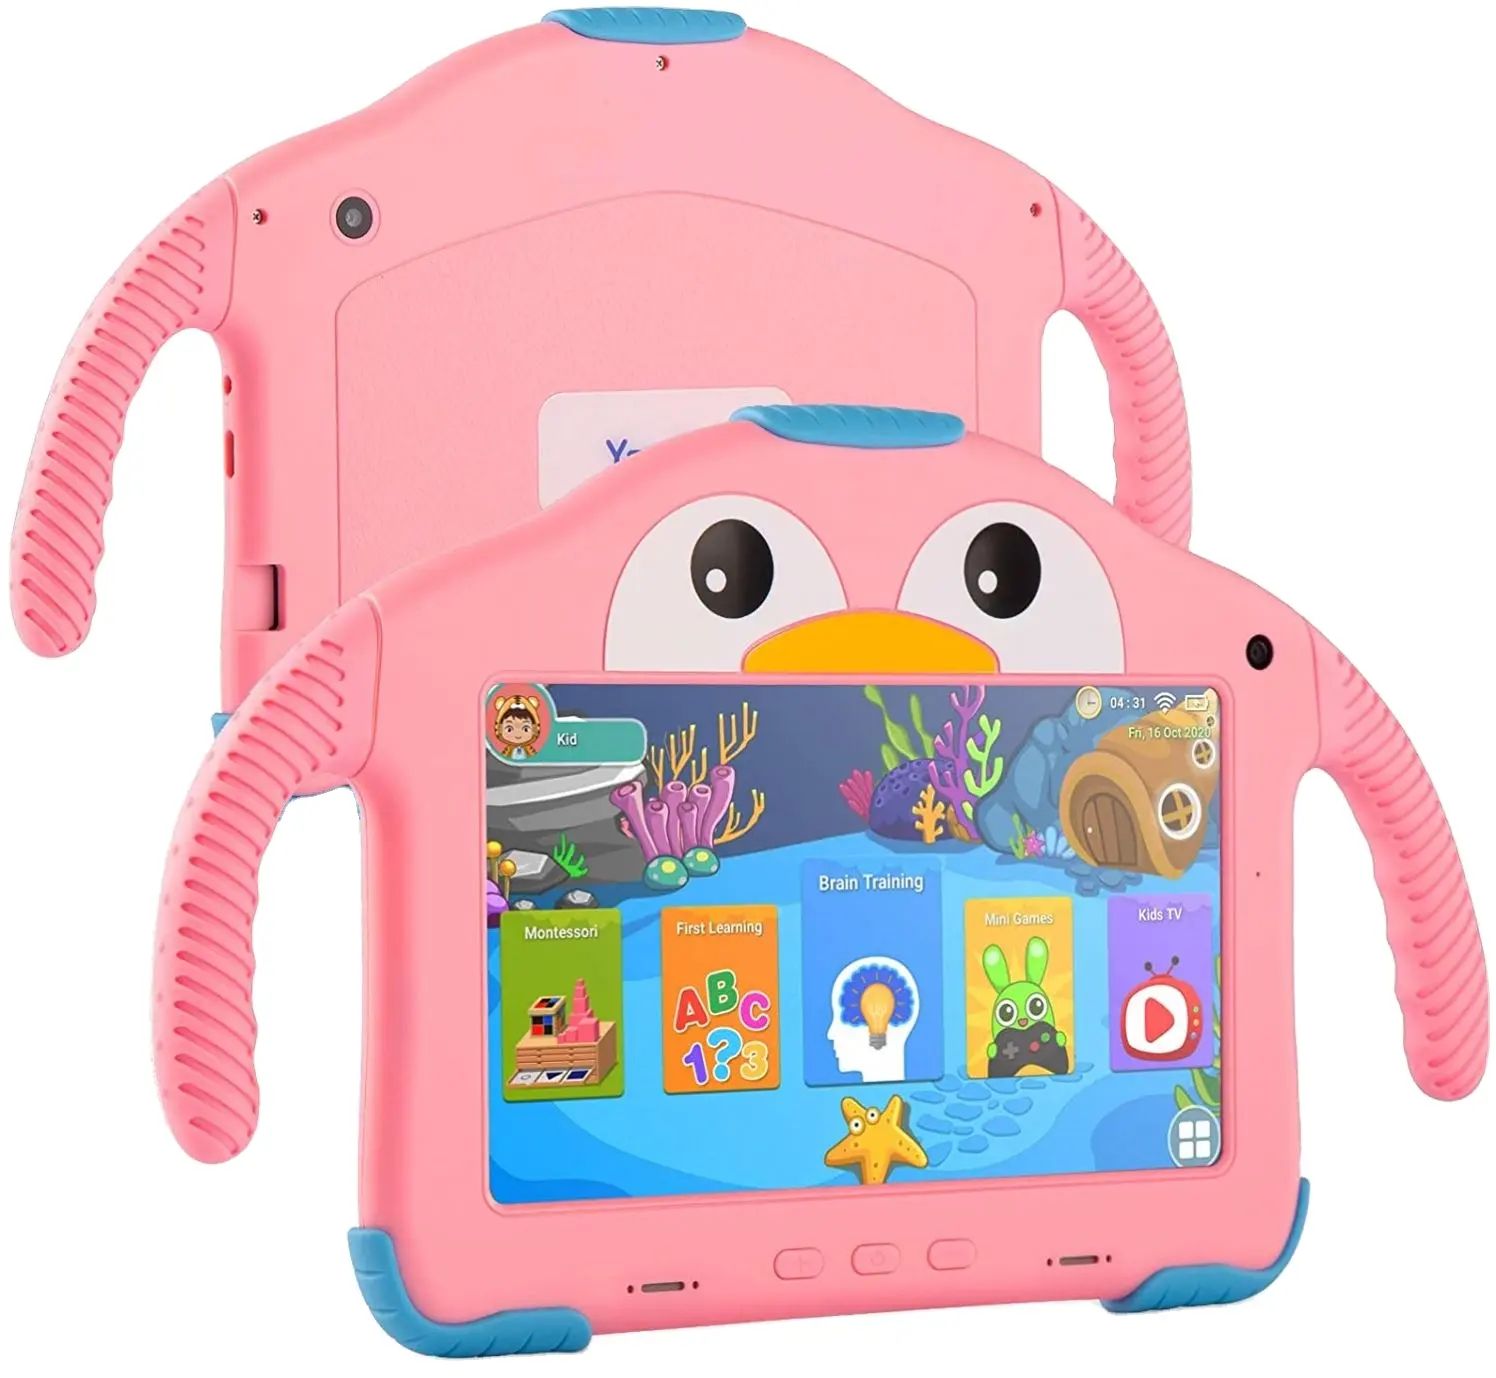 Più economico oem rk3326 Modello WiFi 7 'di apprendimento del capretto APP pre-Installato Quad-Core tablet Android tablet per educazione bambini tablet pc